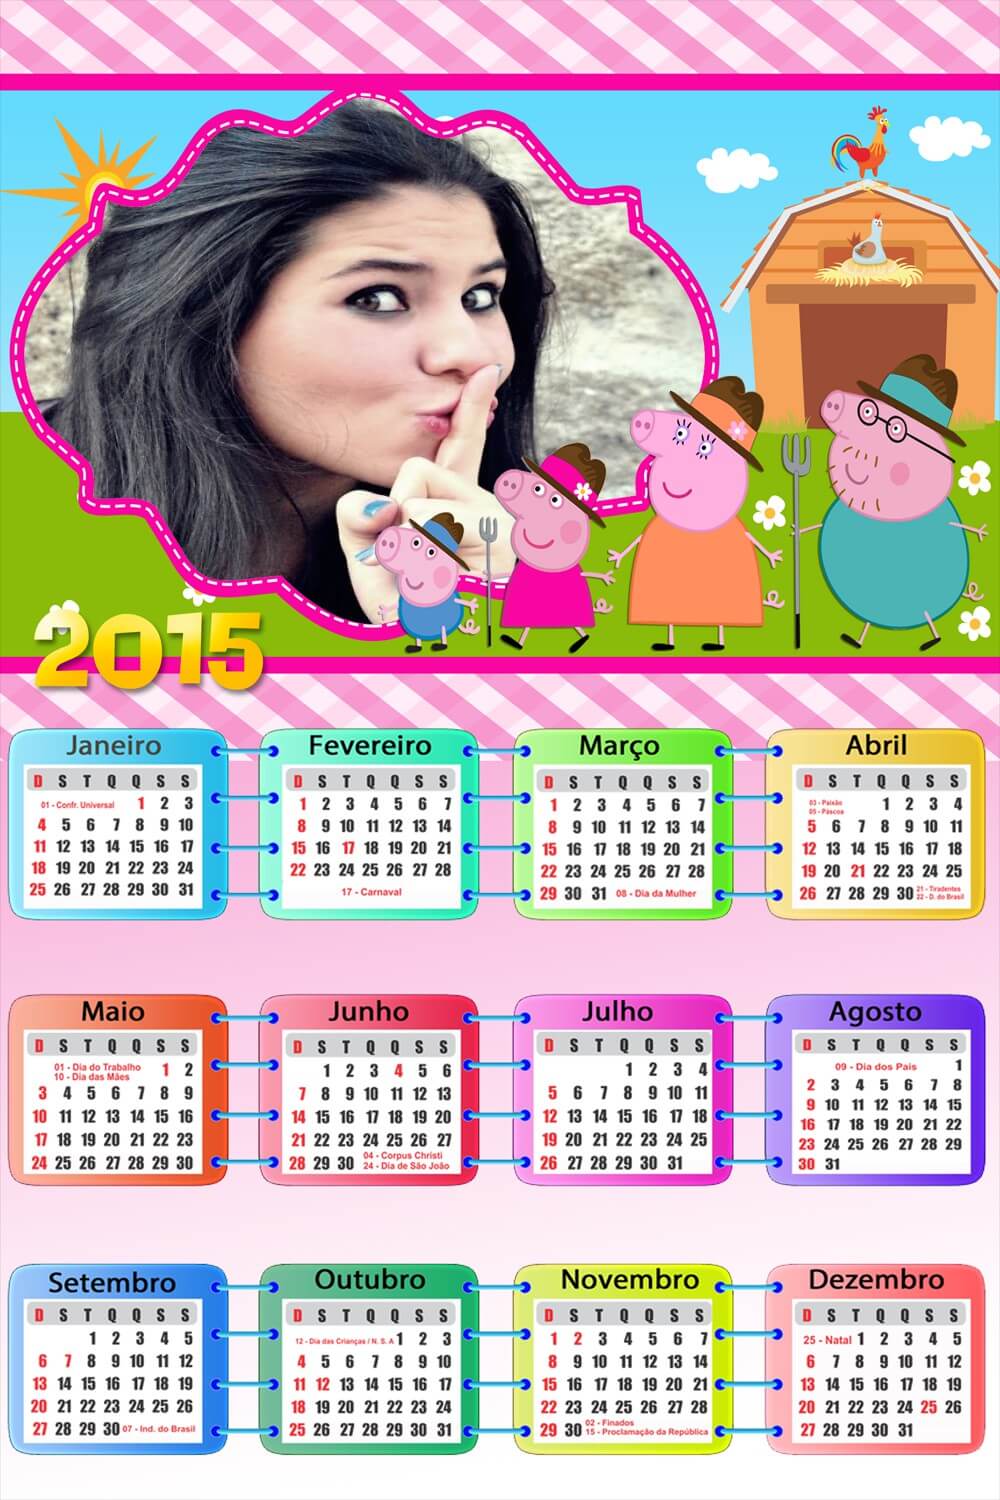 montar-fotos-calendario-peppa-pig-2015